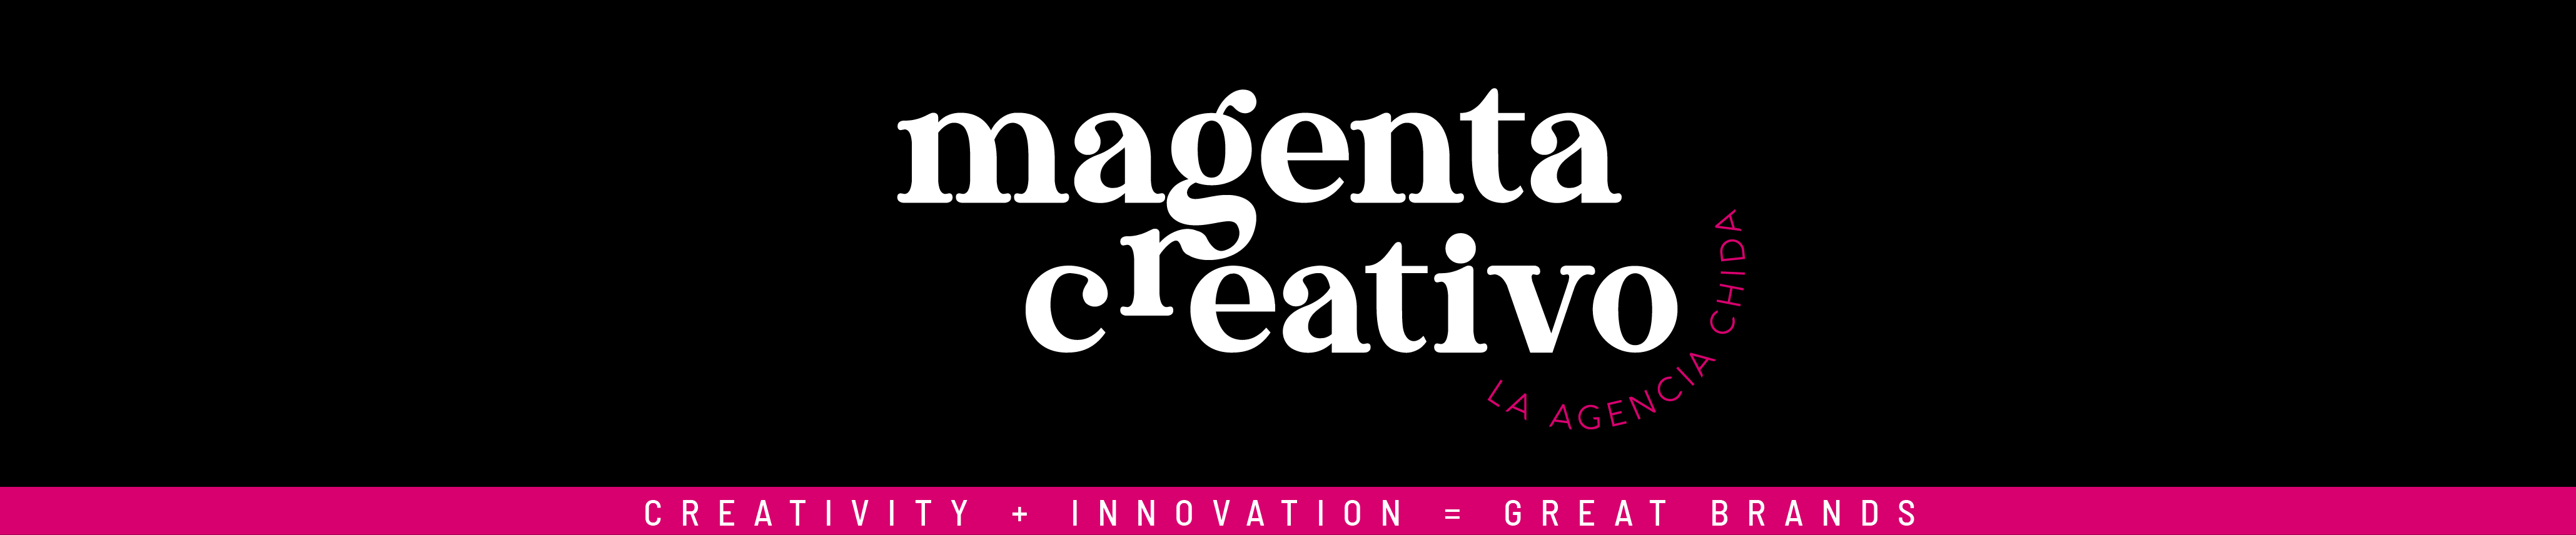 Баннер профиля Magenta Creativo MX